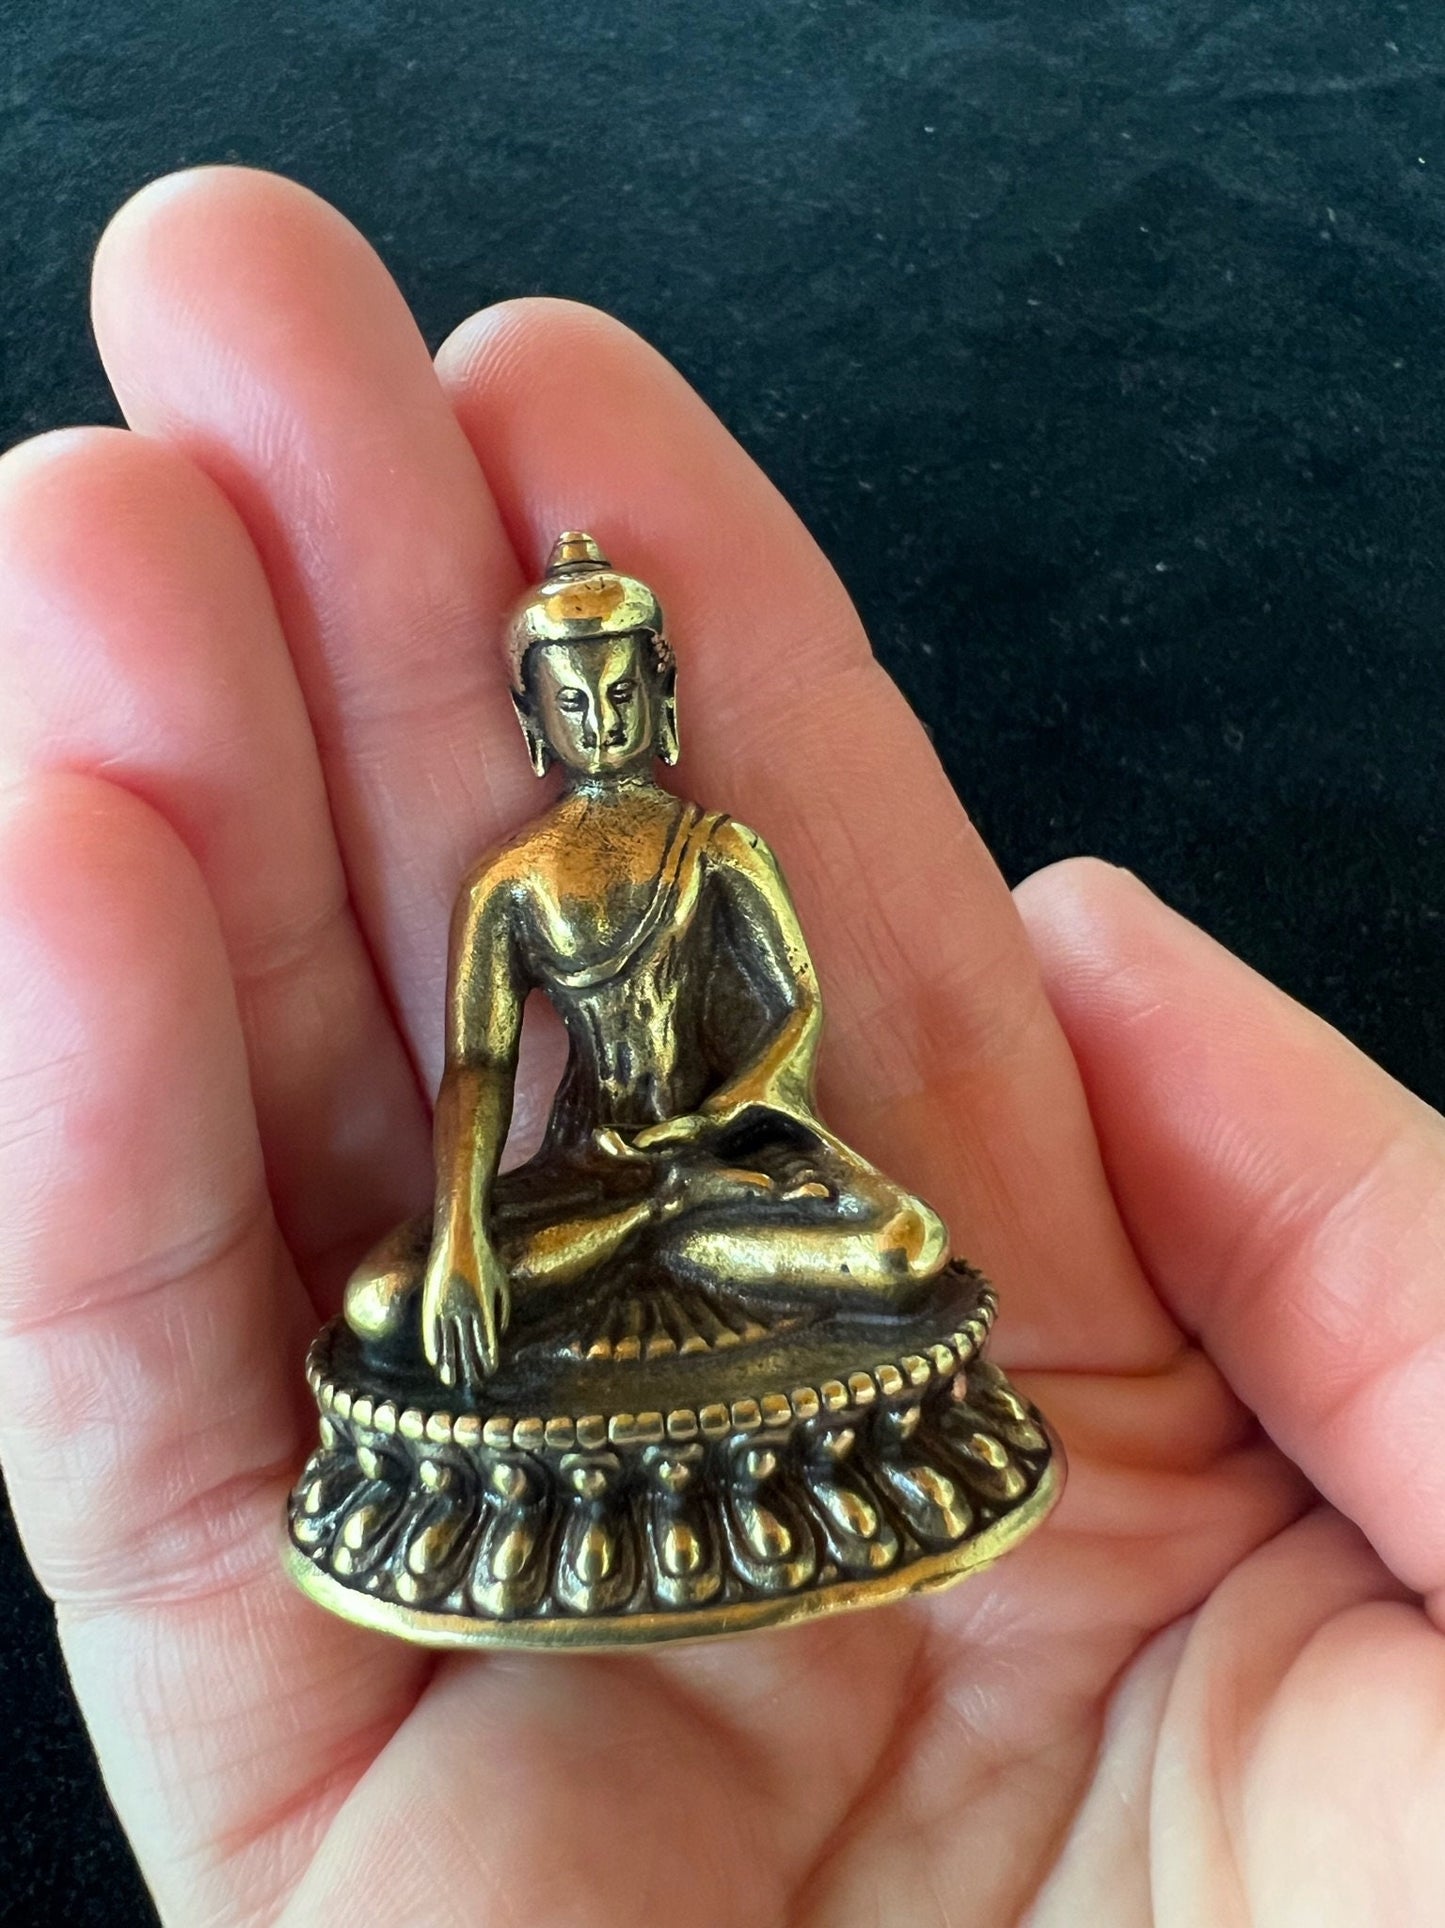 Deluxe Small Buddha Shakyamuni Statue | Handmade |1.85 inches